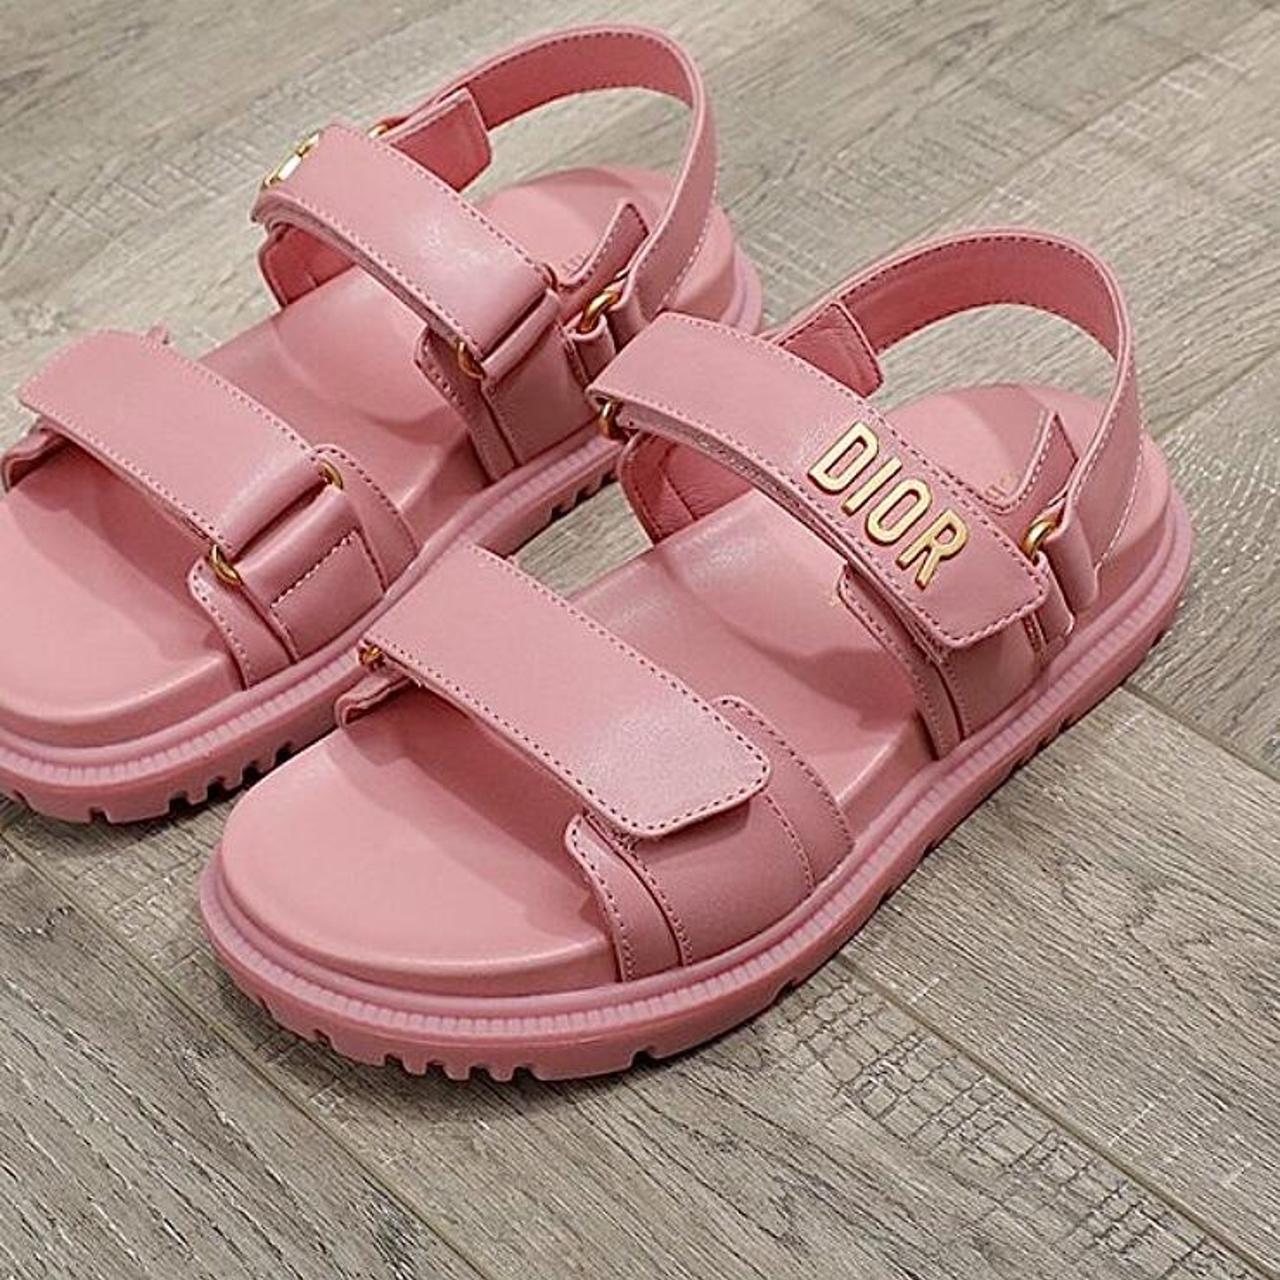 pink lambskin dioract sandal brand new ️ message... - Depop